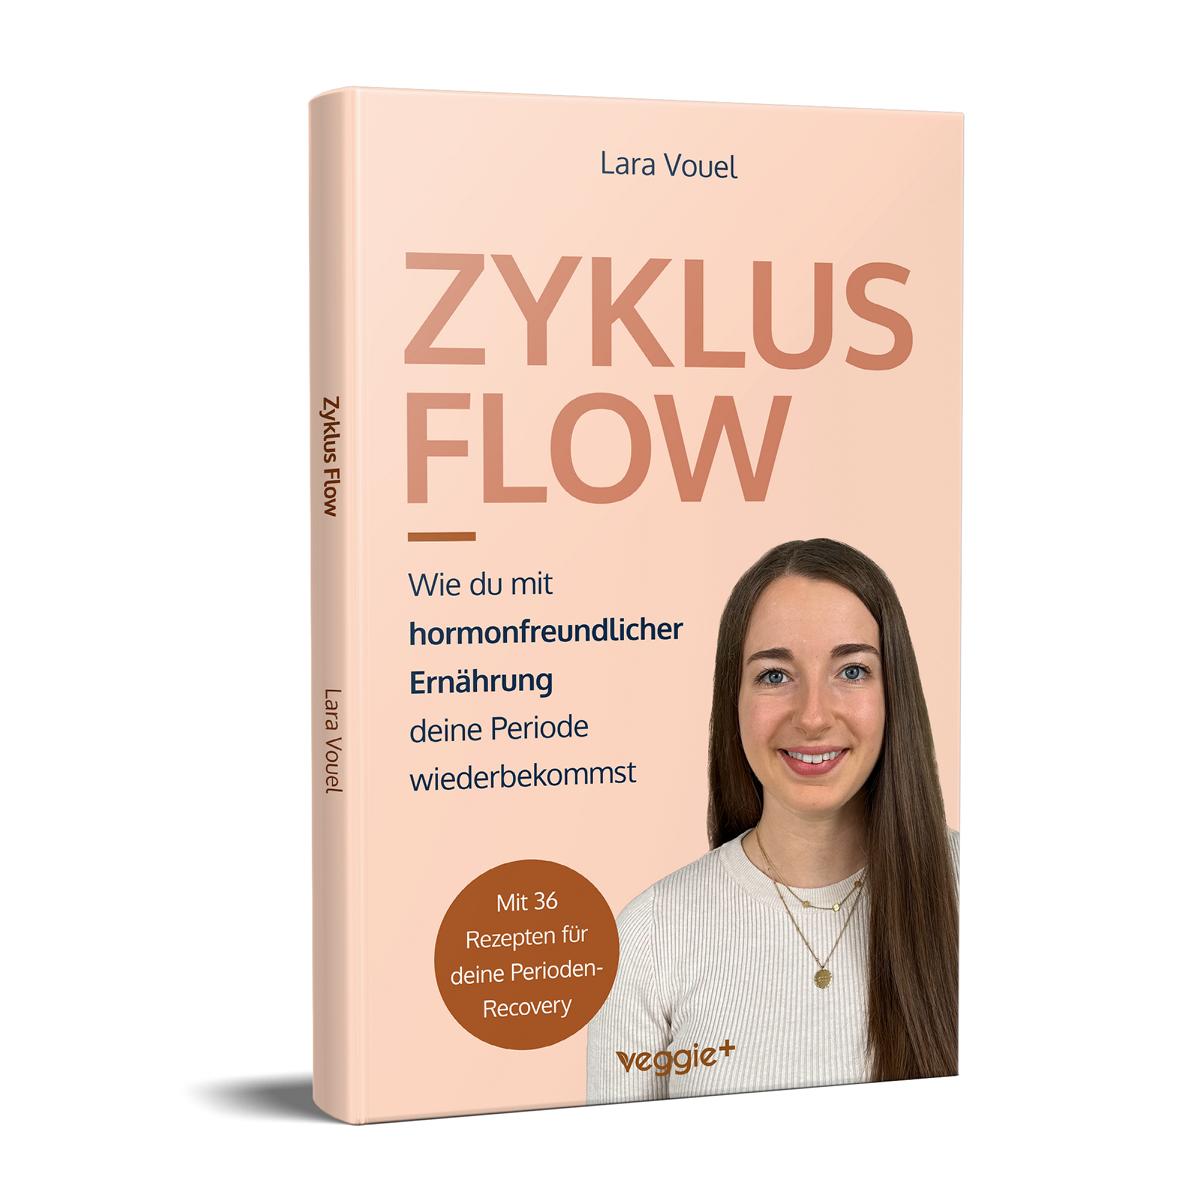 Zyklus Flow: Wie du mit hormonfreundlicher Ernährung deine Periode wiederbekommst von Lara Vouel im veggie + Verlag